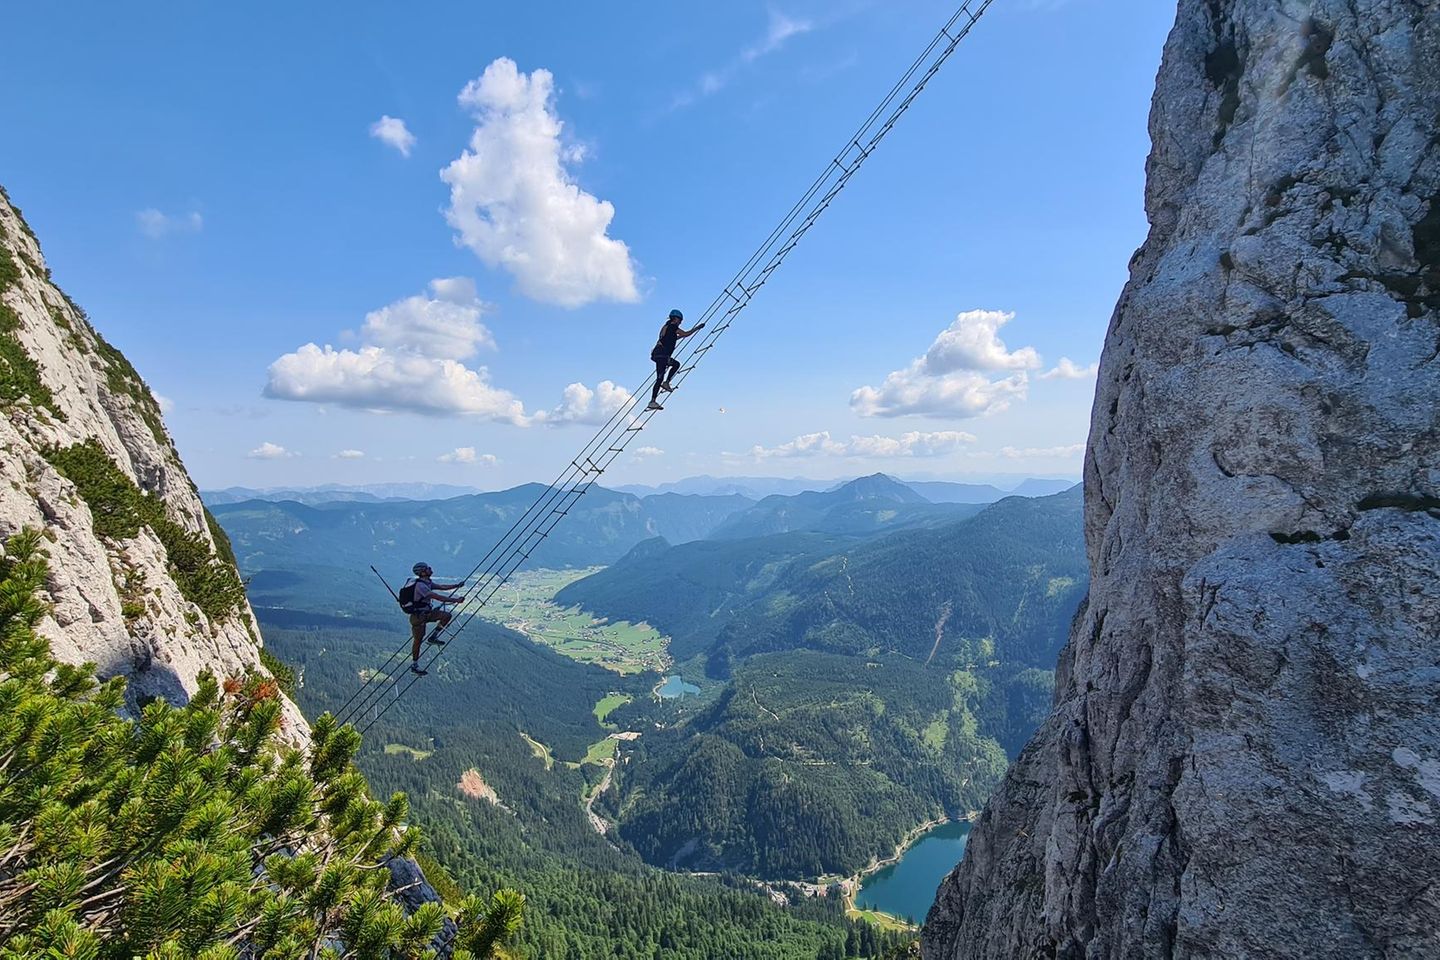 Die "Himmelsleiter" am Donnerkogel im Dachsteingebirge ist ein beliebtes Fotomotiv. Wer sich hier fotografieren lassen möchte, muss allerdings erst einen mehrstündigen Klettersteig überwinden